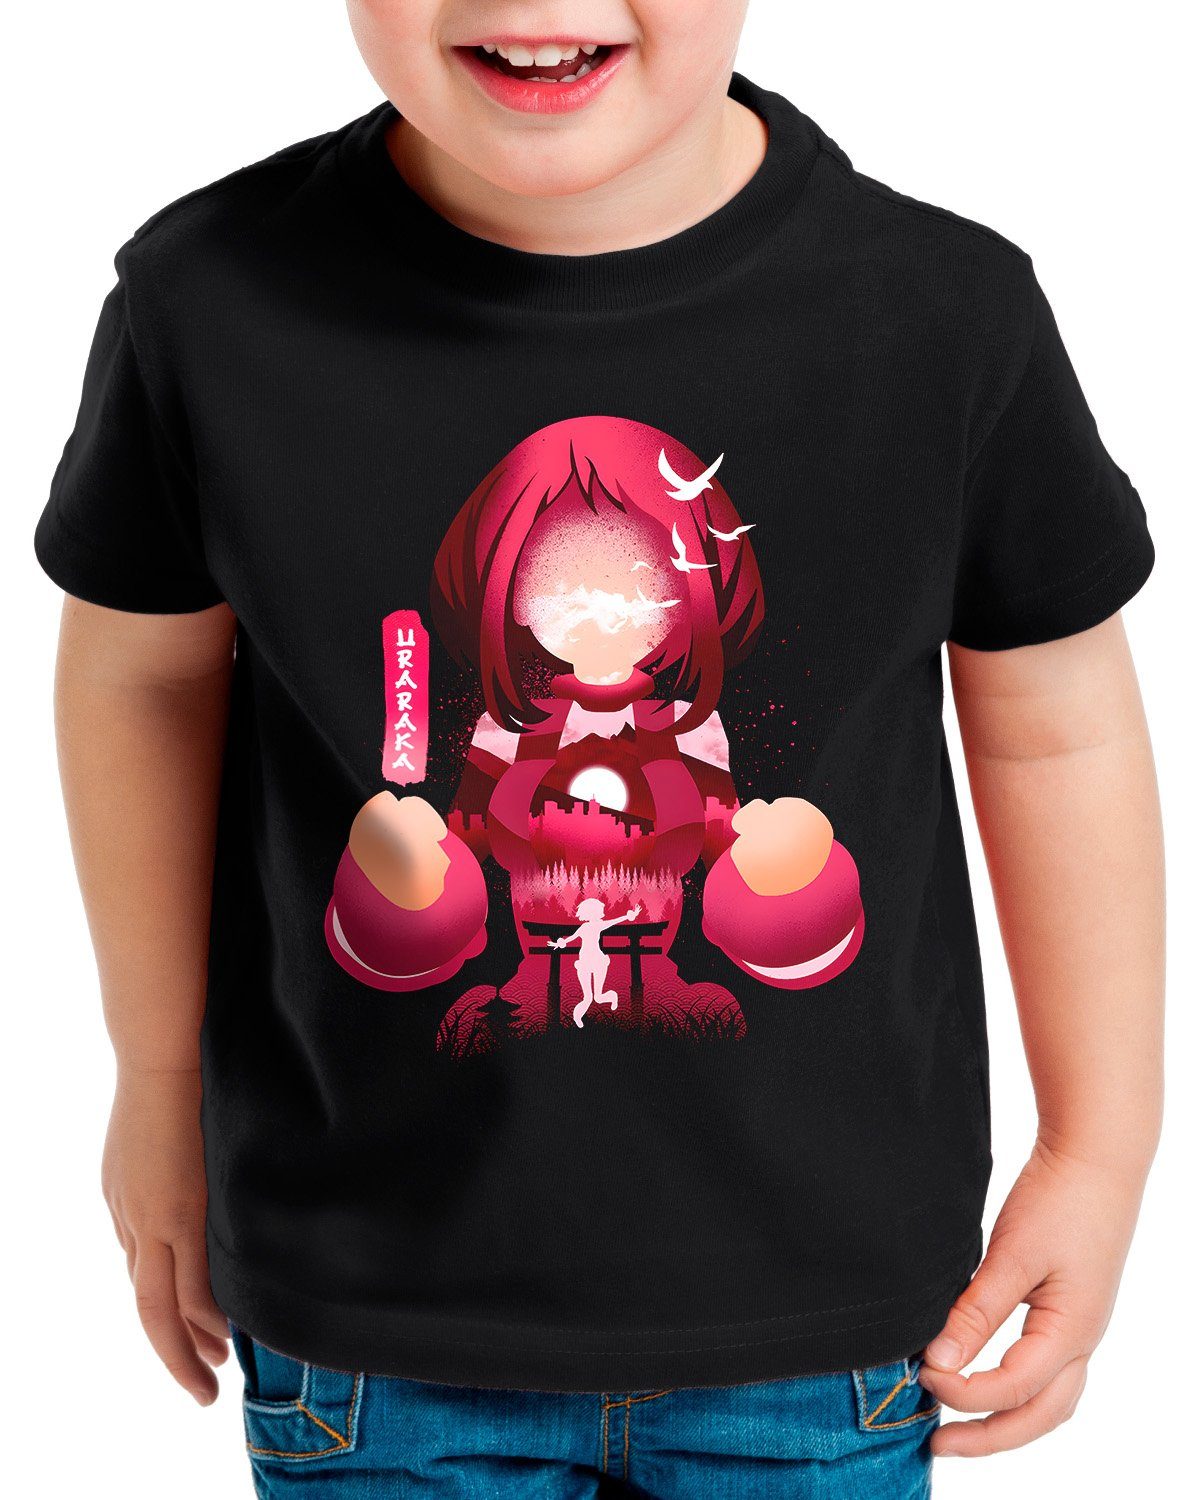 Großer Verkauf! style3 Print-Shirt Kinder T-Shirt cosplay academia my hero Uravity manga anime